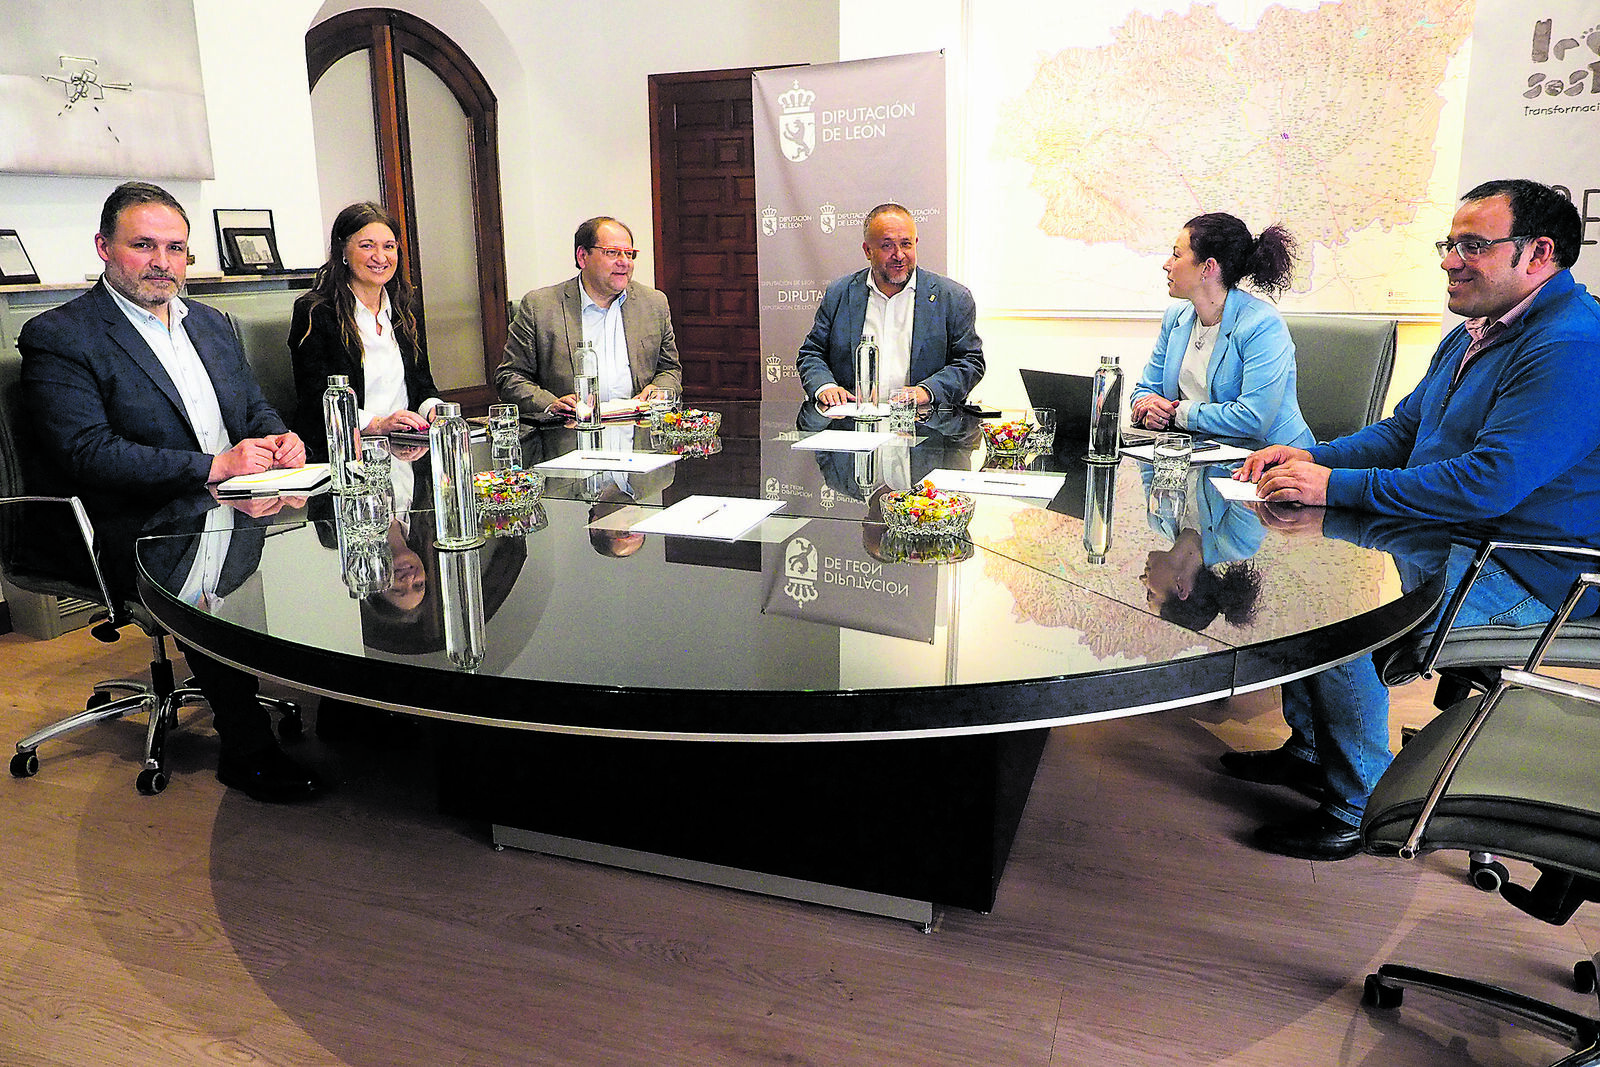 Imagen del encuentro entre los representantes de la Diputación de León y del Ayuntamiento de La Bañeza. | L.N.C.